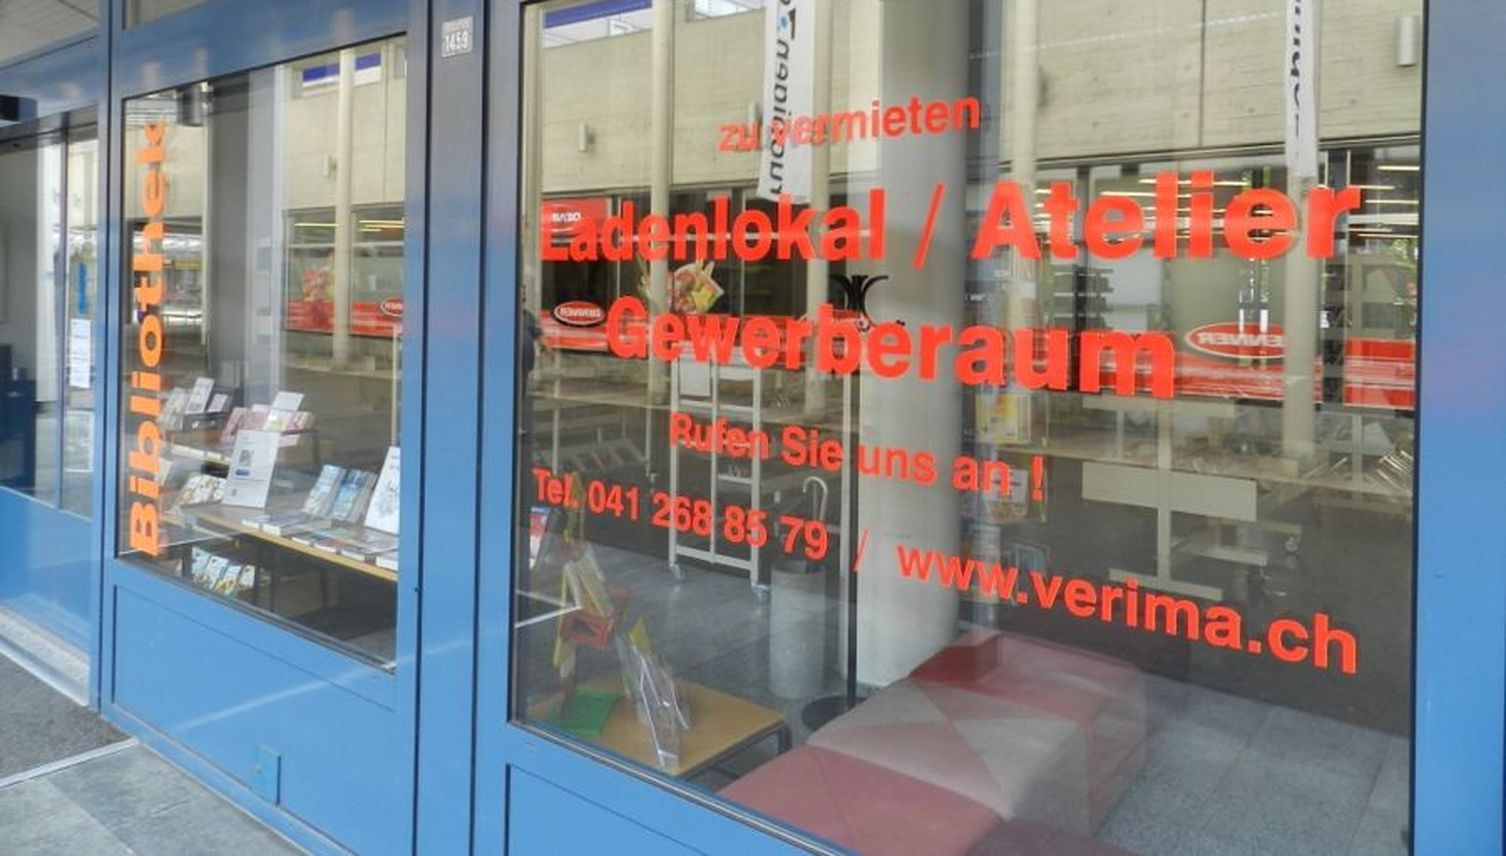 Wieder Irritation in Littau: Muss Bibliothek Ruopigen ausziehen?